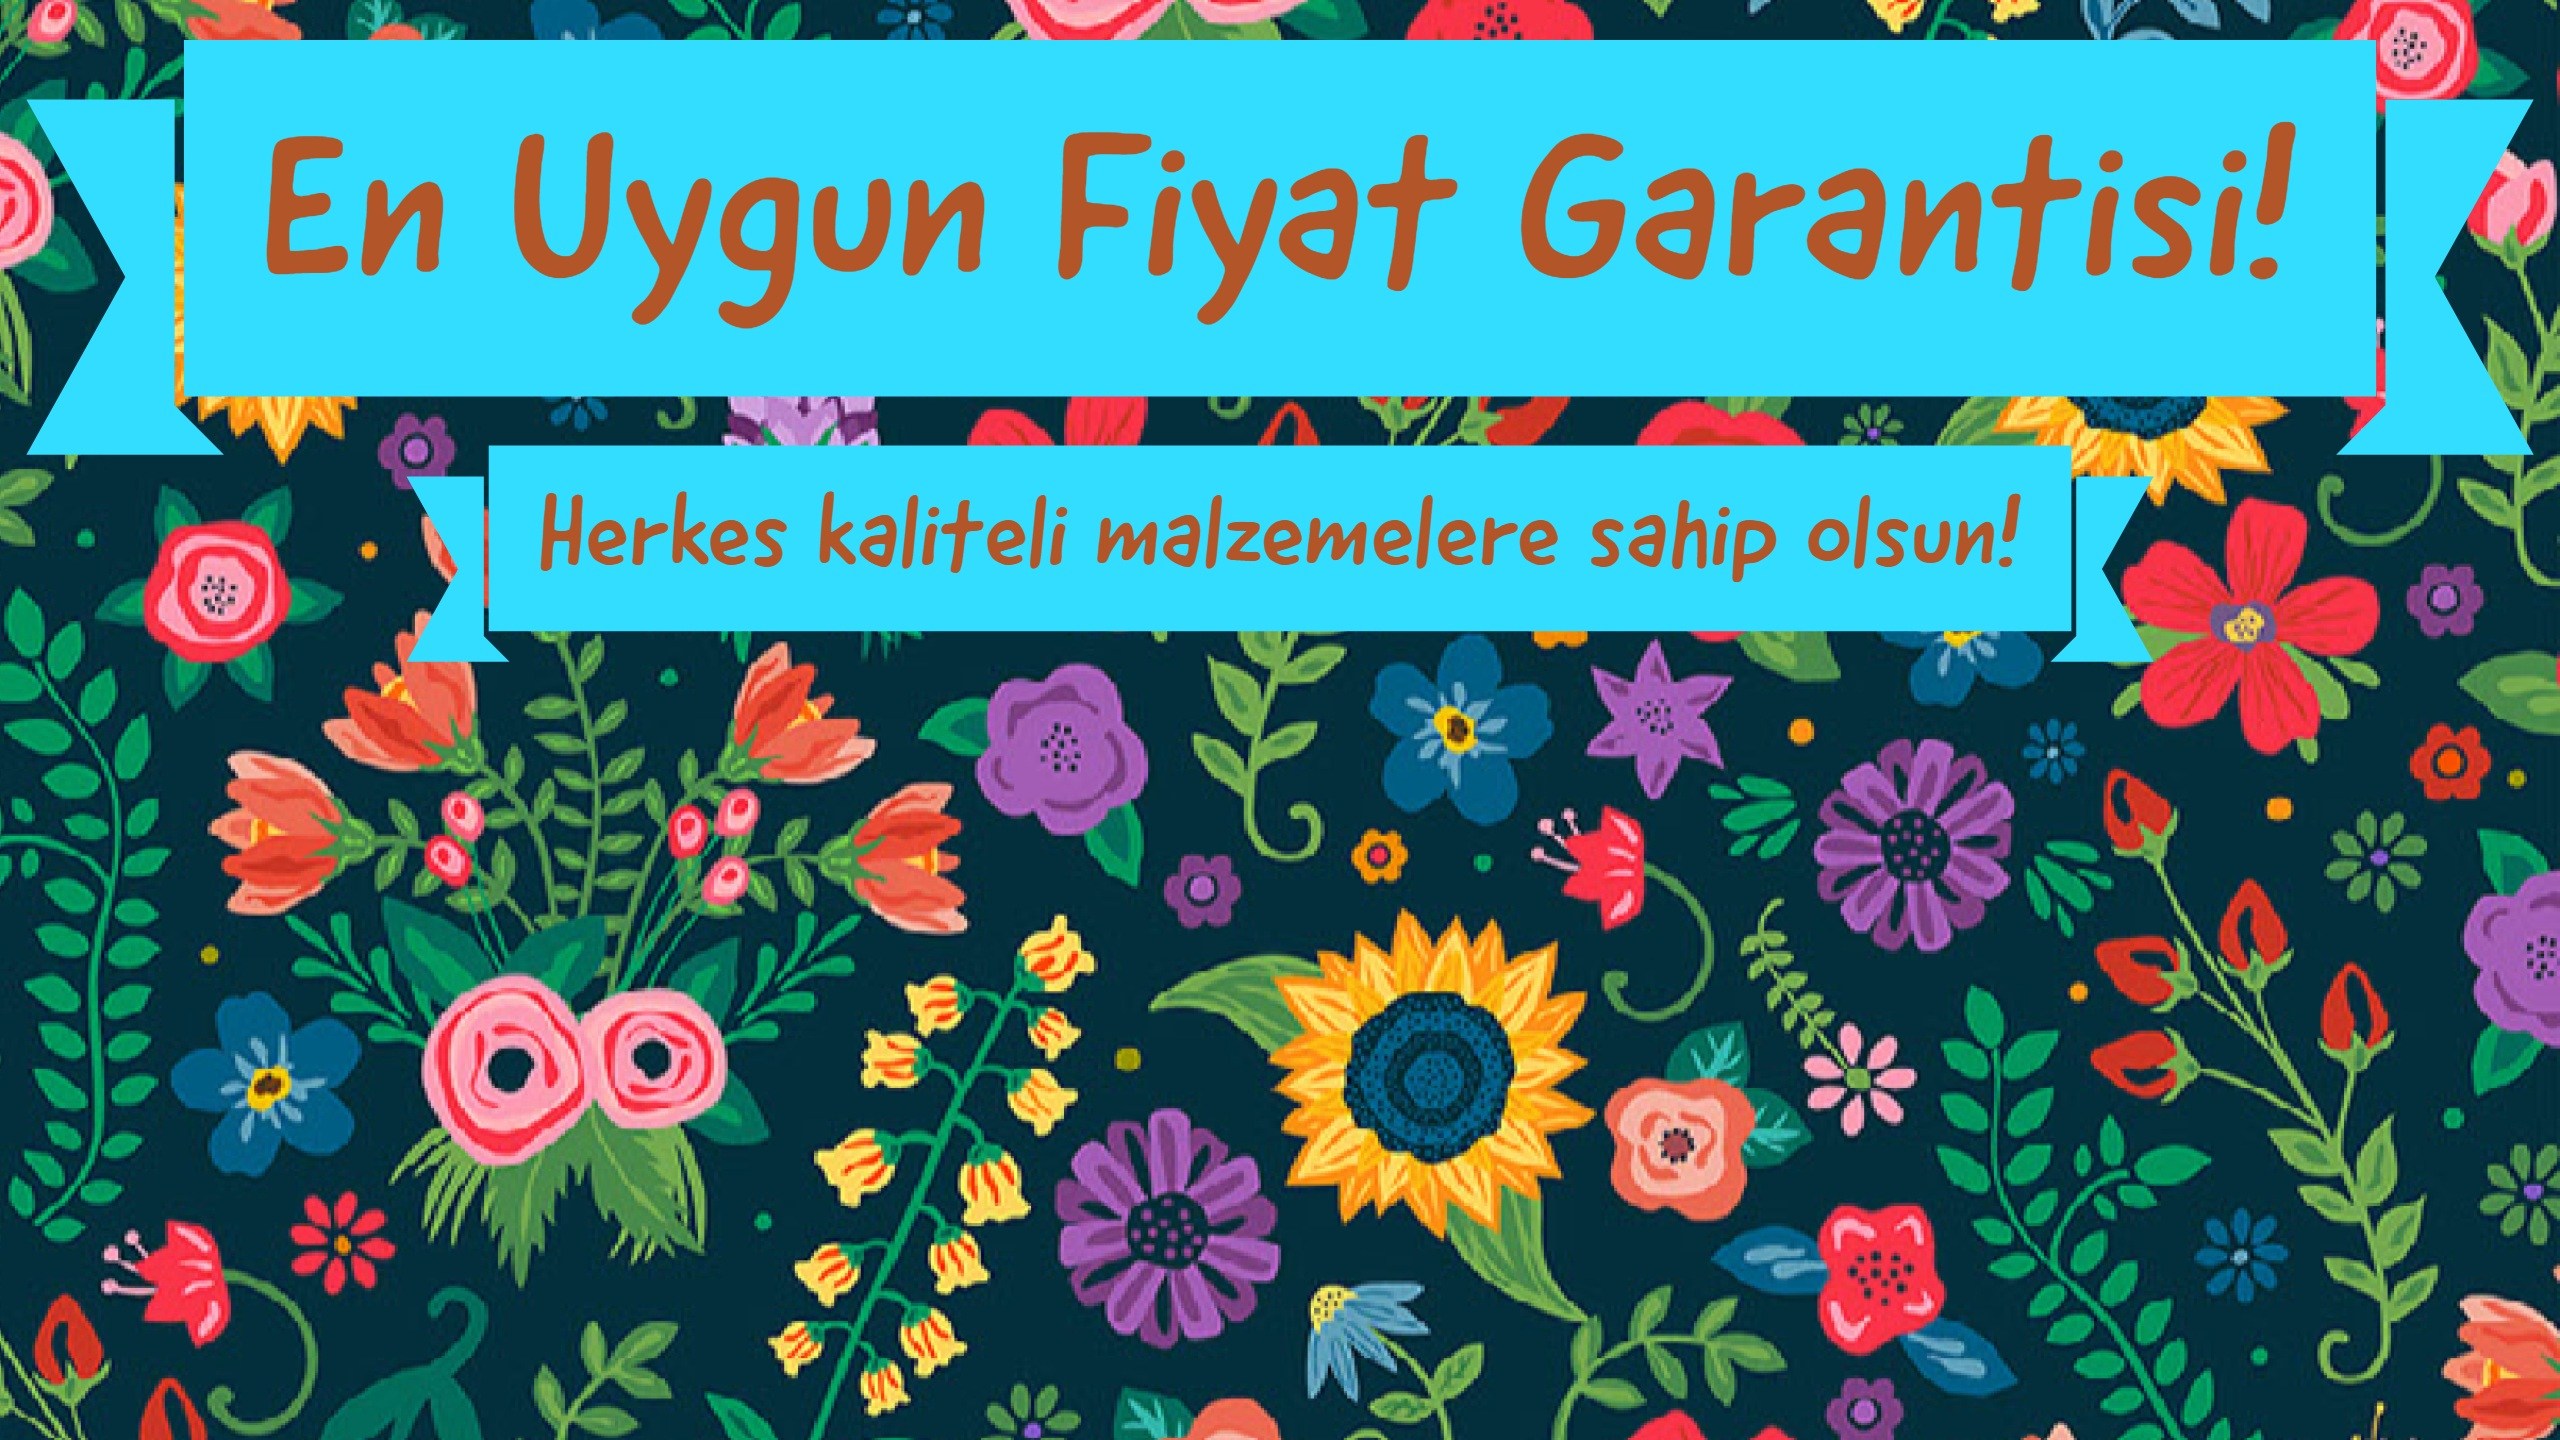 Kalemcik Türkiye Nin Sanatsal Boya Tedarikçisi Kalemcik - African Daisy , HD Wallpaper & Backgrounds